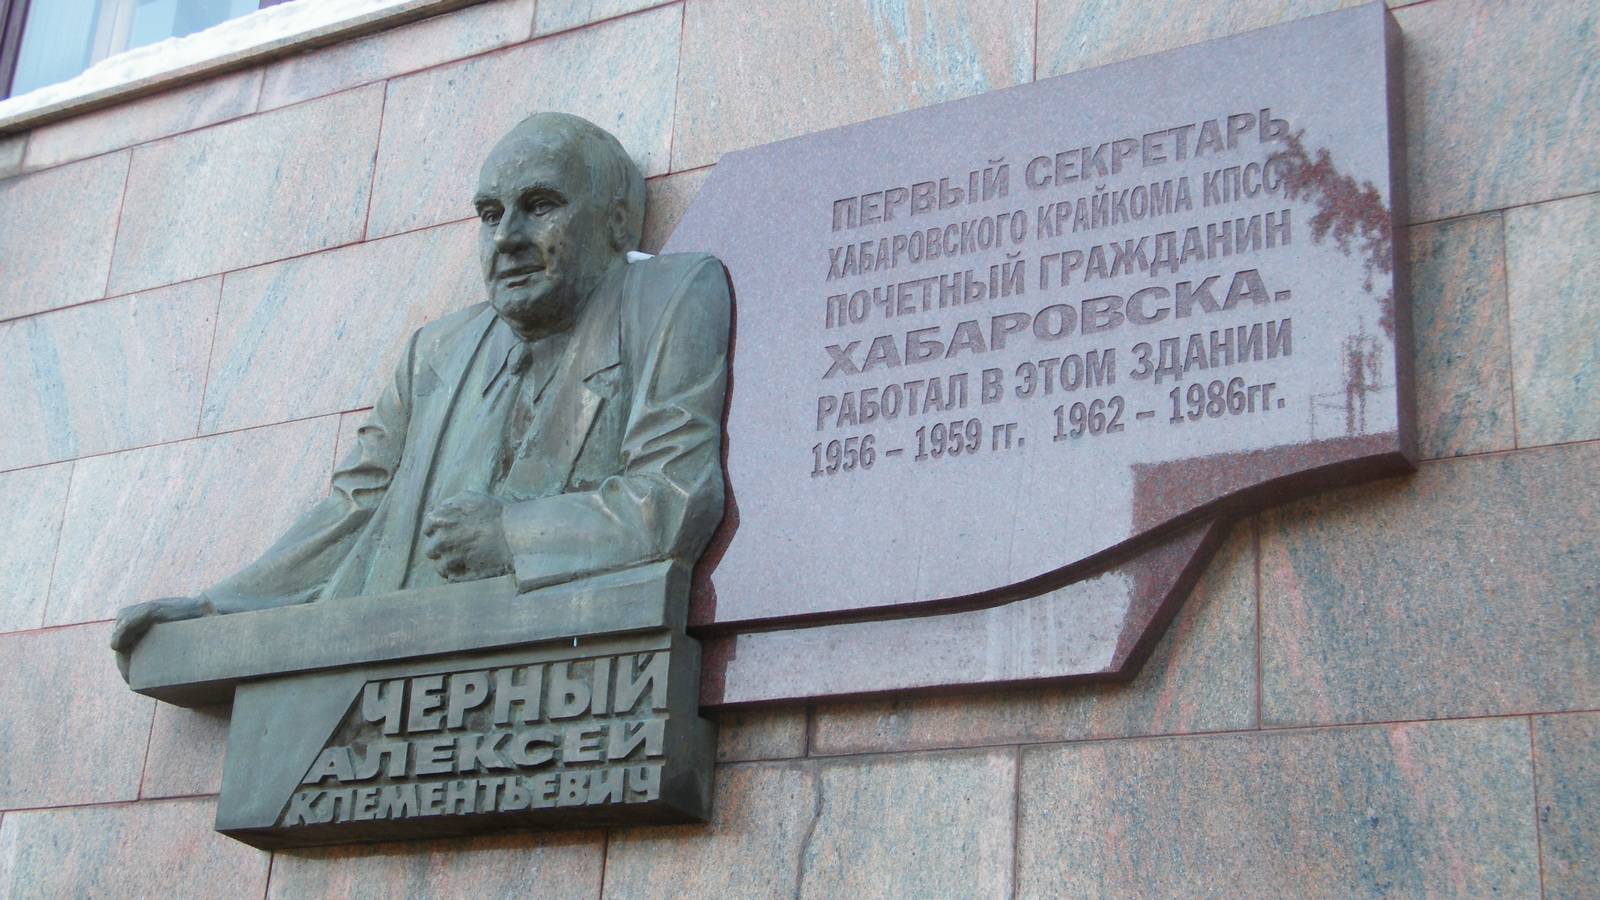 Мемориальная доска Алексею Чёрному в г. Хабаровске